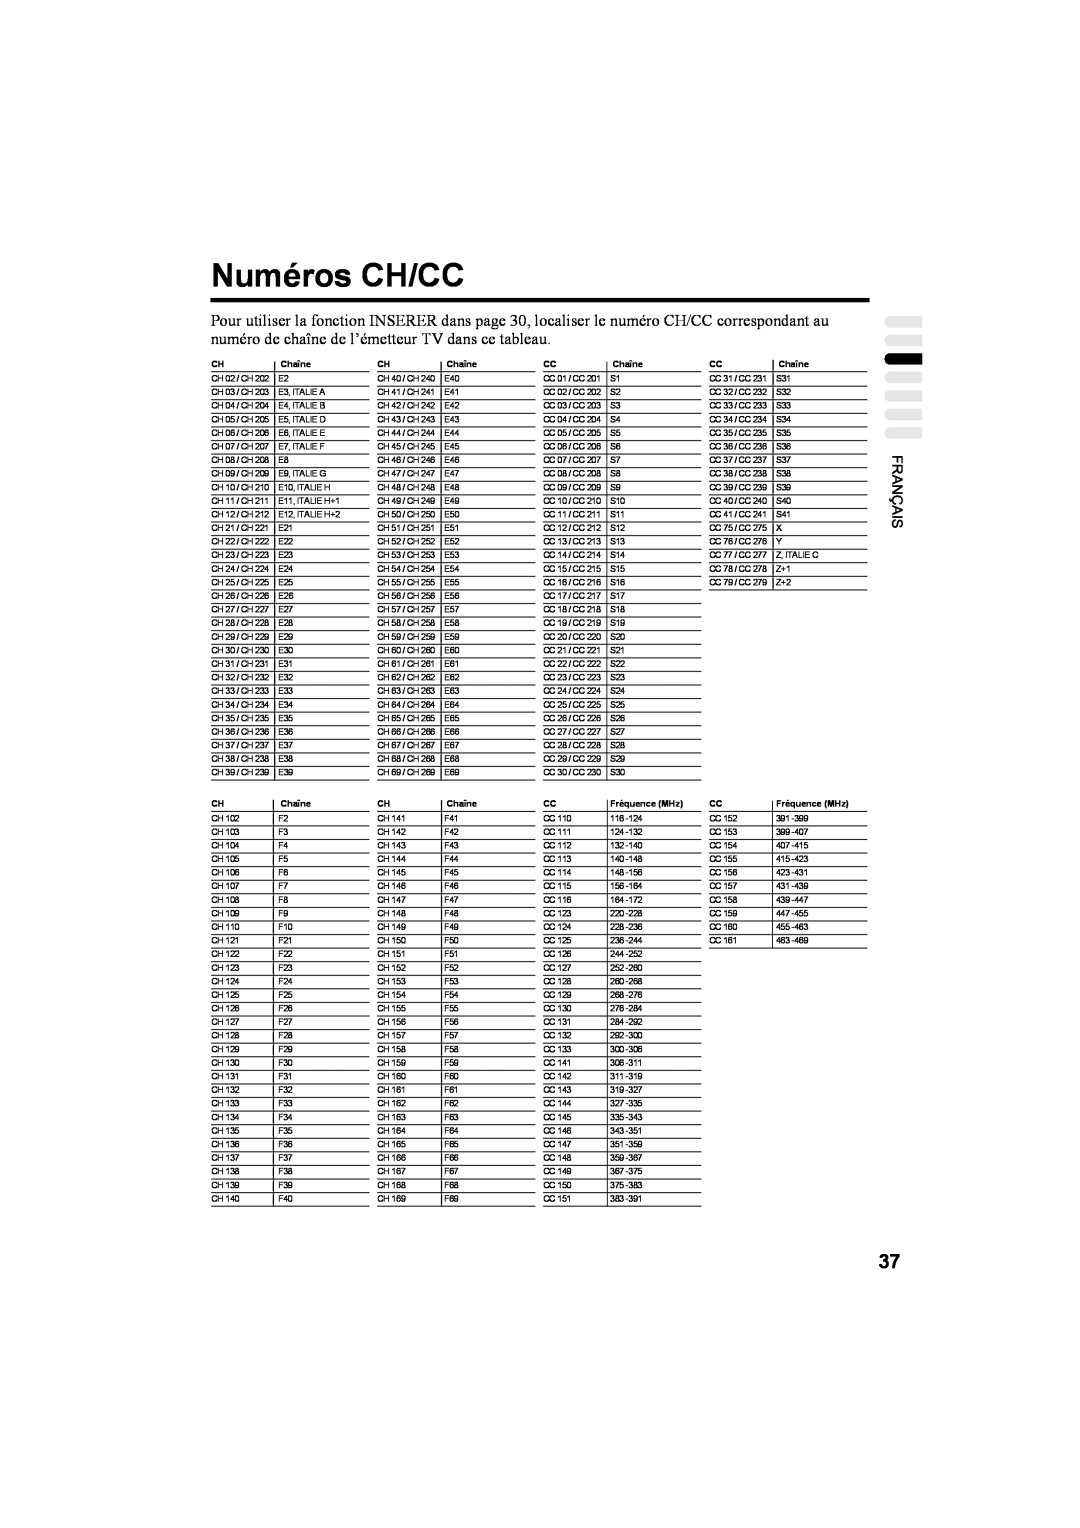 JVC AV32T20EP, AV28T20EP manual Numéros CH/CC, Chaîne, Fréquence MHz 